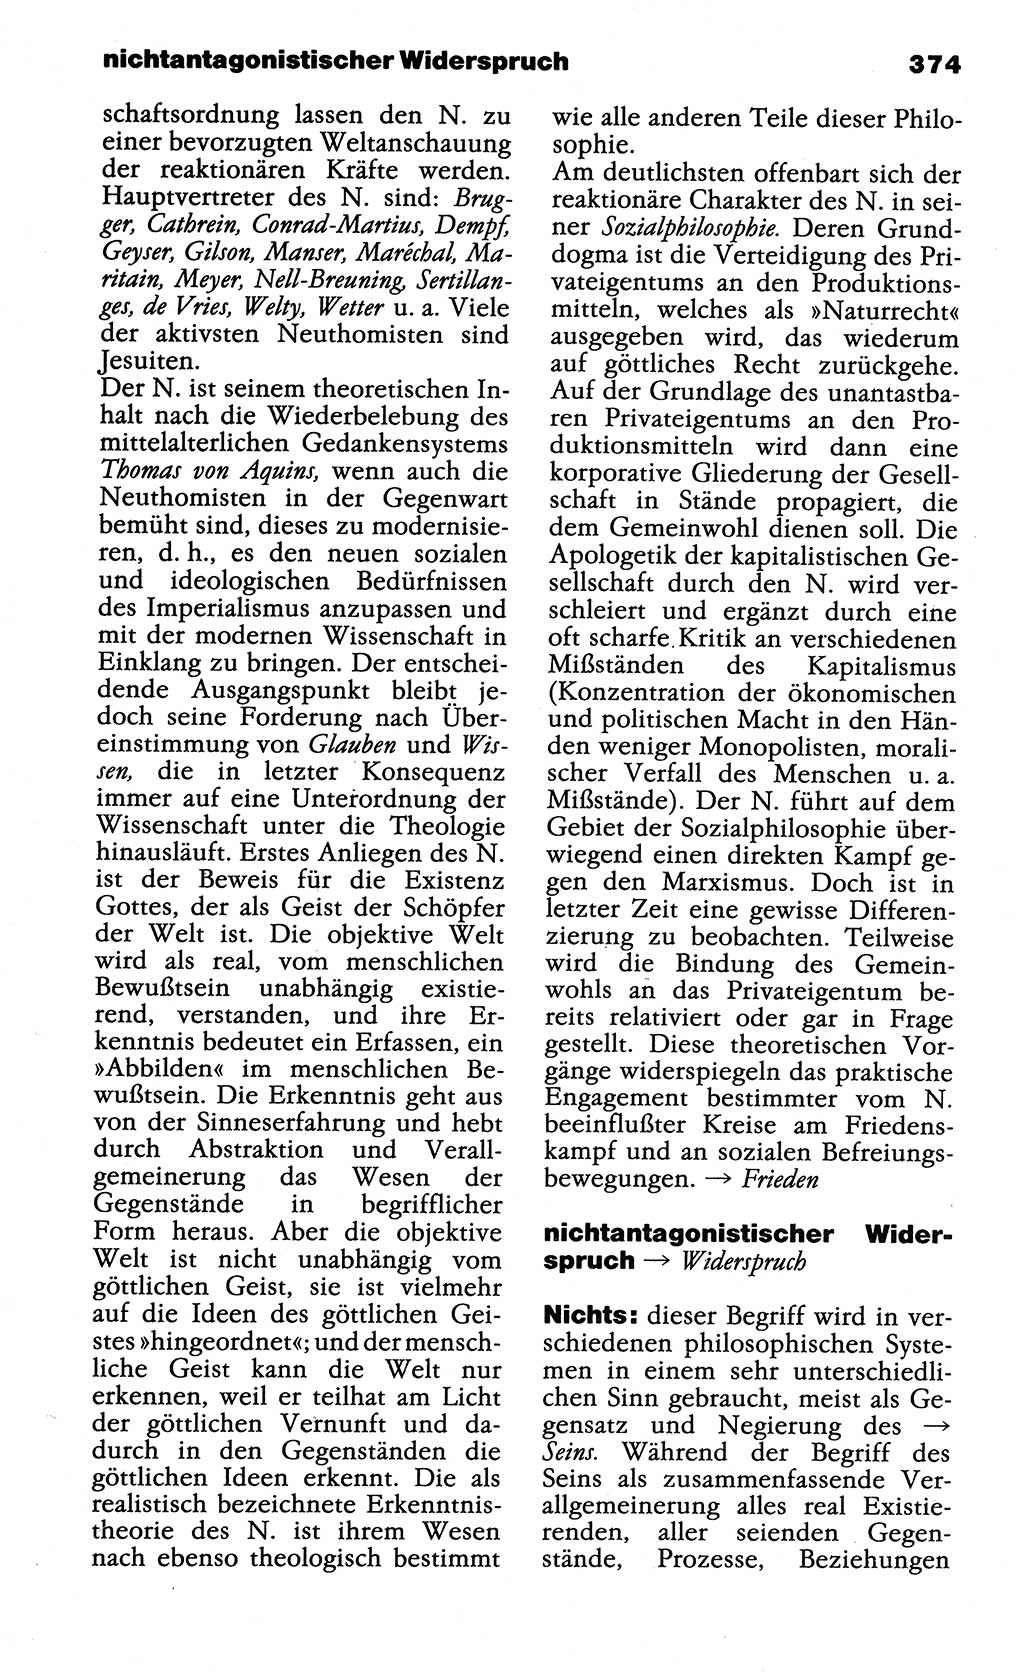 Wörterbuch der marxistisch-leninistischen Philosophie [Deutsche Demokratische Republik (DDR)] 1985, Seite 374 (Wb. ML Phil. DDR 1985, S. 374)